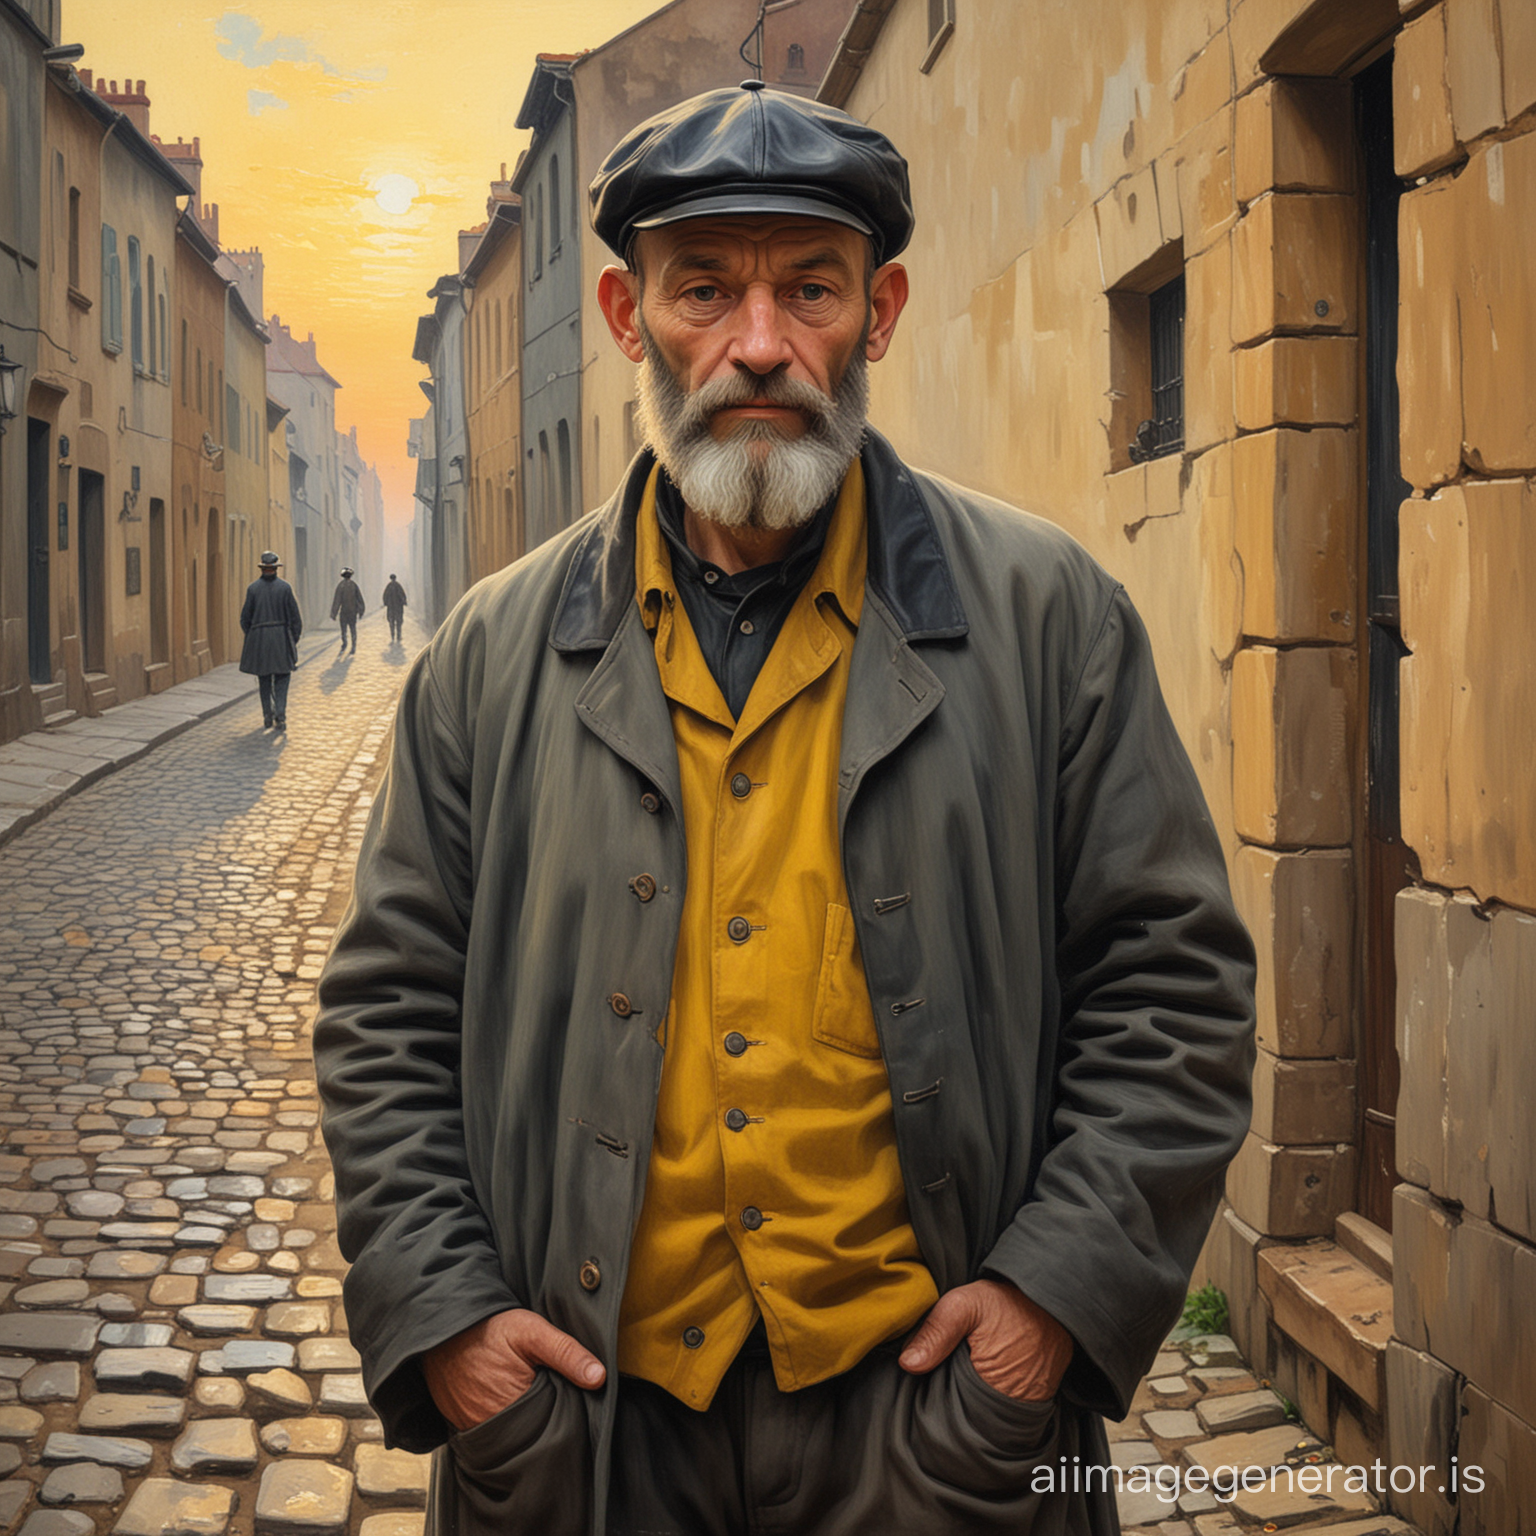 Peinture d'un homme de 50 ans chauve mais barbu au 19e siècle dans le style des tableaux de Cézanne. L'homme se tient debout dans une rue pavée au coucher du soleil. Il est de taille moyenne, trapu. Il porte une casquette en cuir noire, une chemise jaune en toile épaisse, ouverte au col et une surchemise grise par-dessus, très usée. Il a un bâton de pélerin à la main.